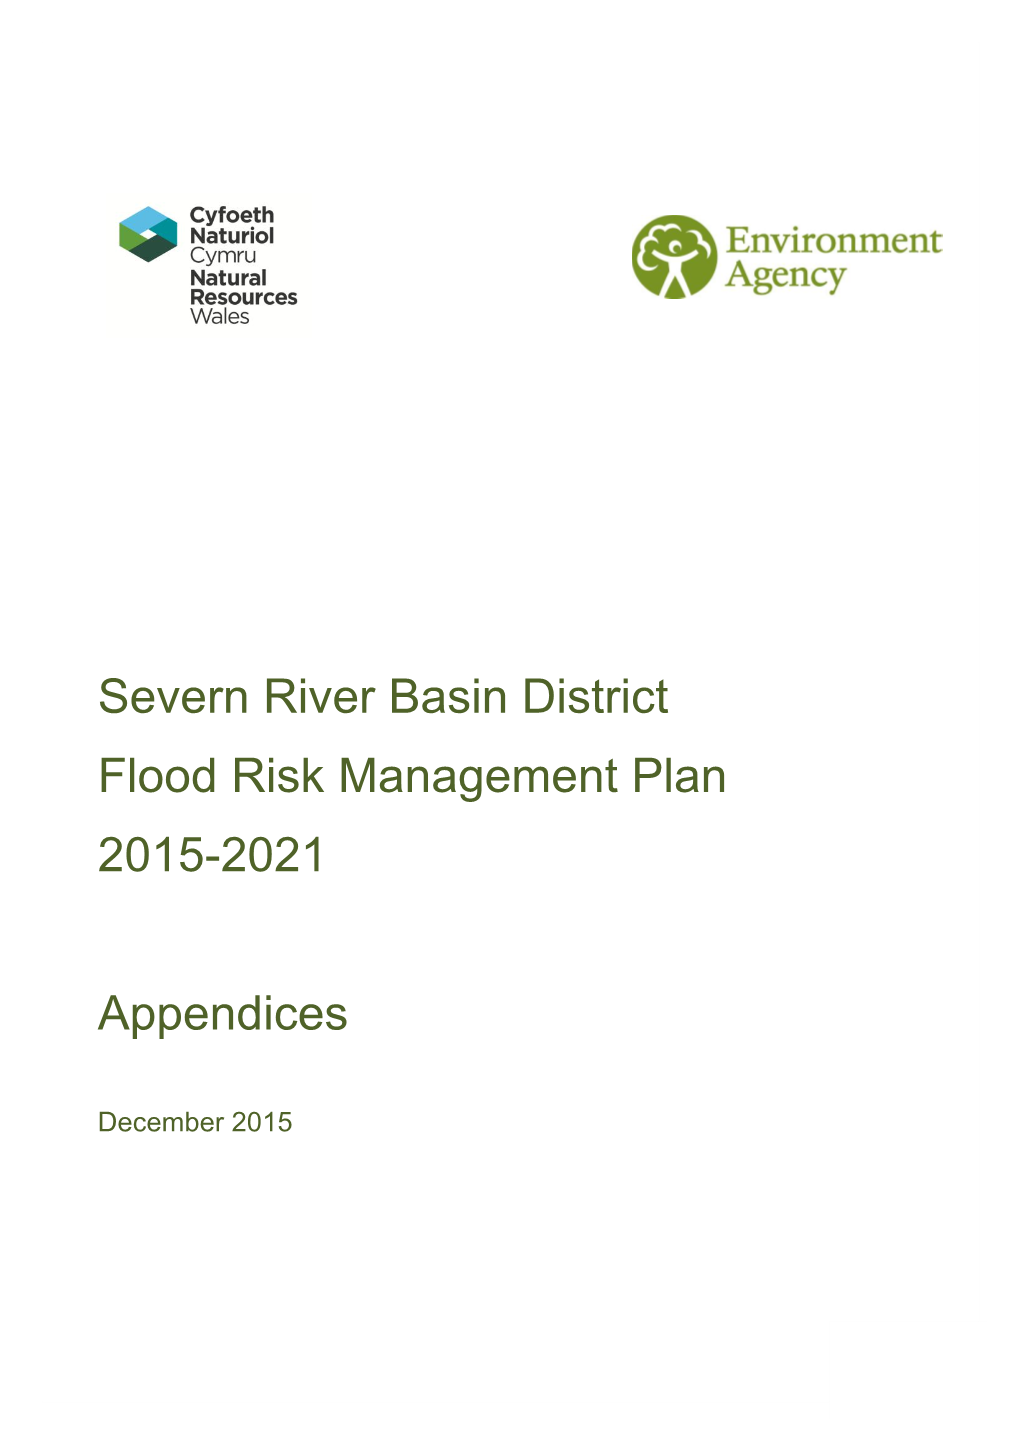 Severn River Basin District Flood Risk Management Plan Appendices